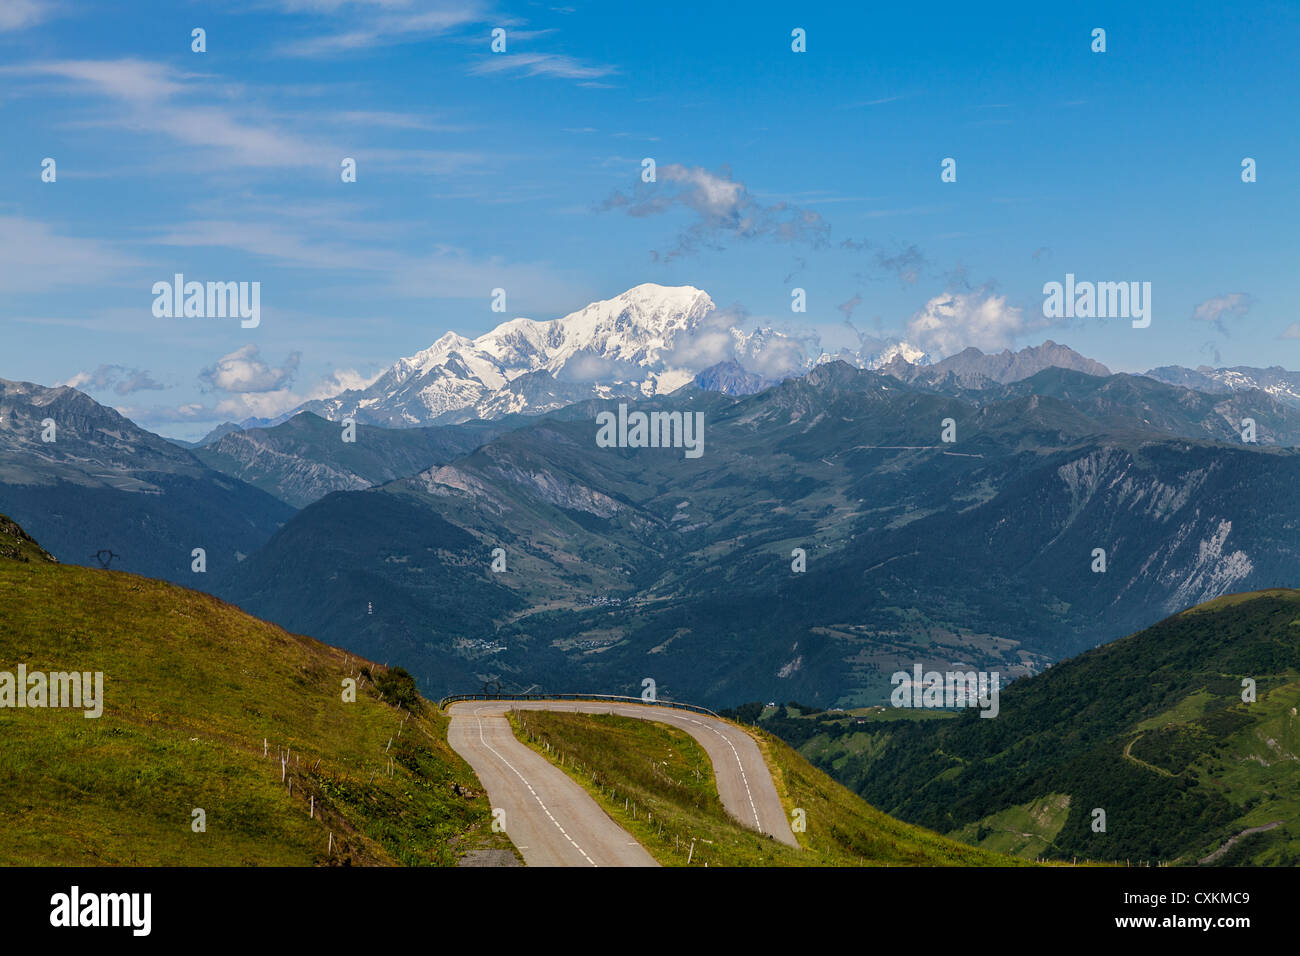 Immagine del massiccio del Monte Bianco come si può vedere da Col de la Madeleine a 2000 m di altitudine. Foto Stock